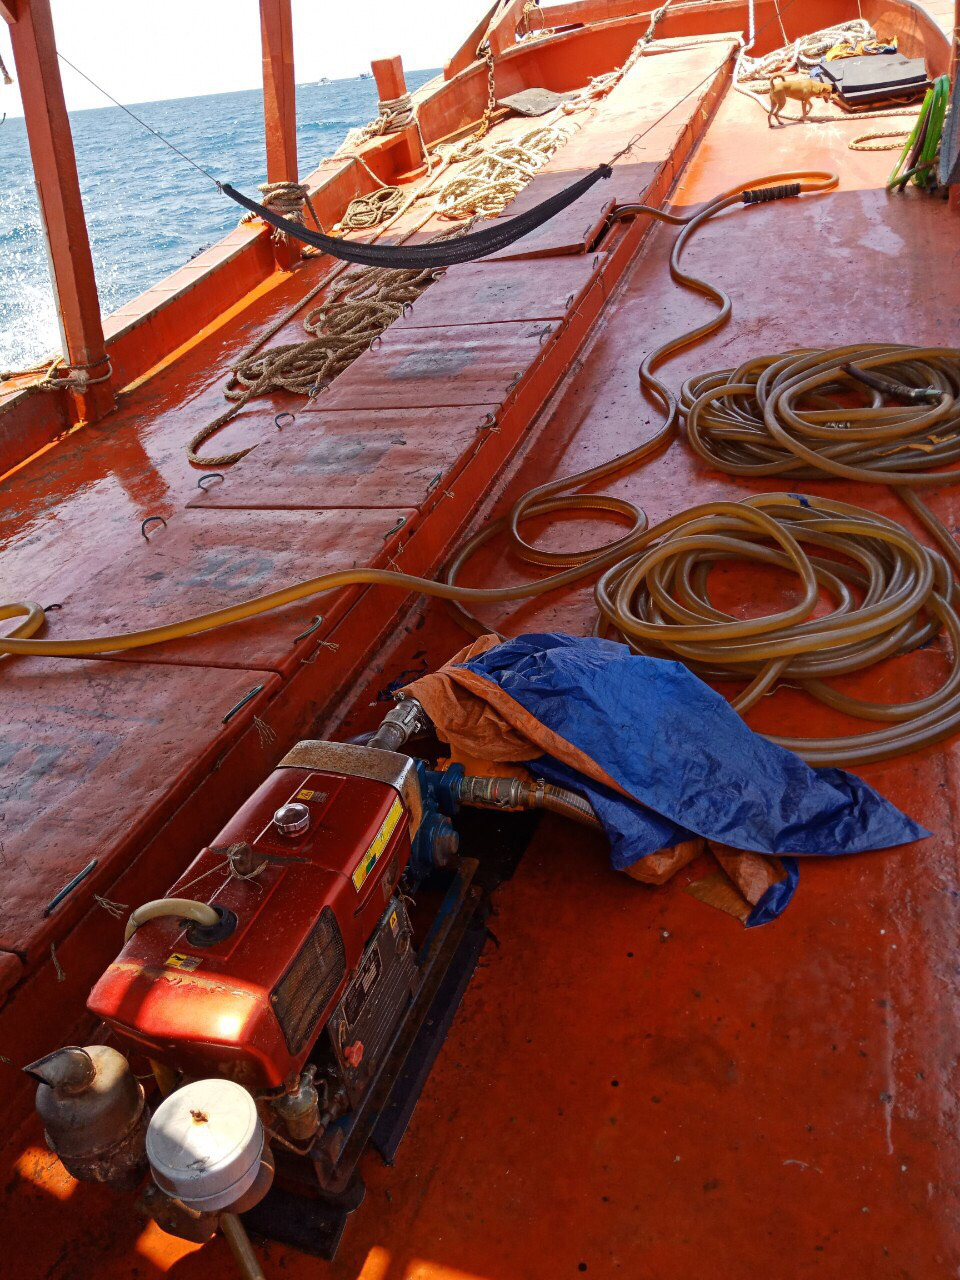 Chi cục Thủy sản Cà Mau vén màn “bí mật” bên trong 9 khoang của tàu cá - Ảnh 2.